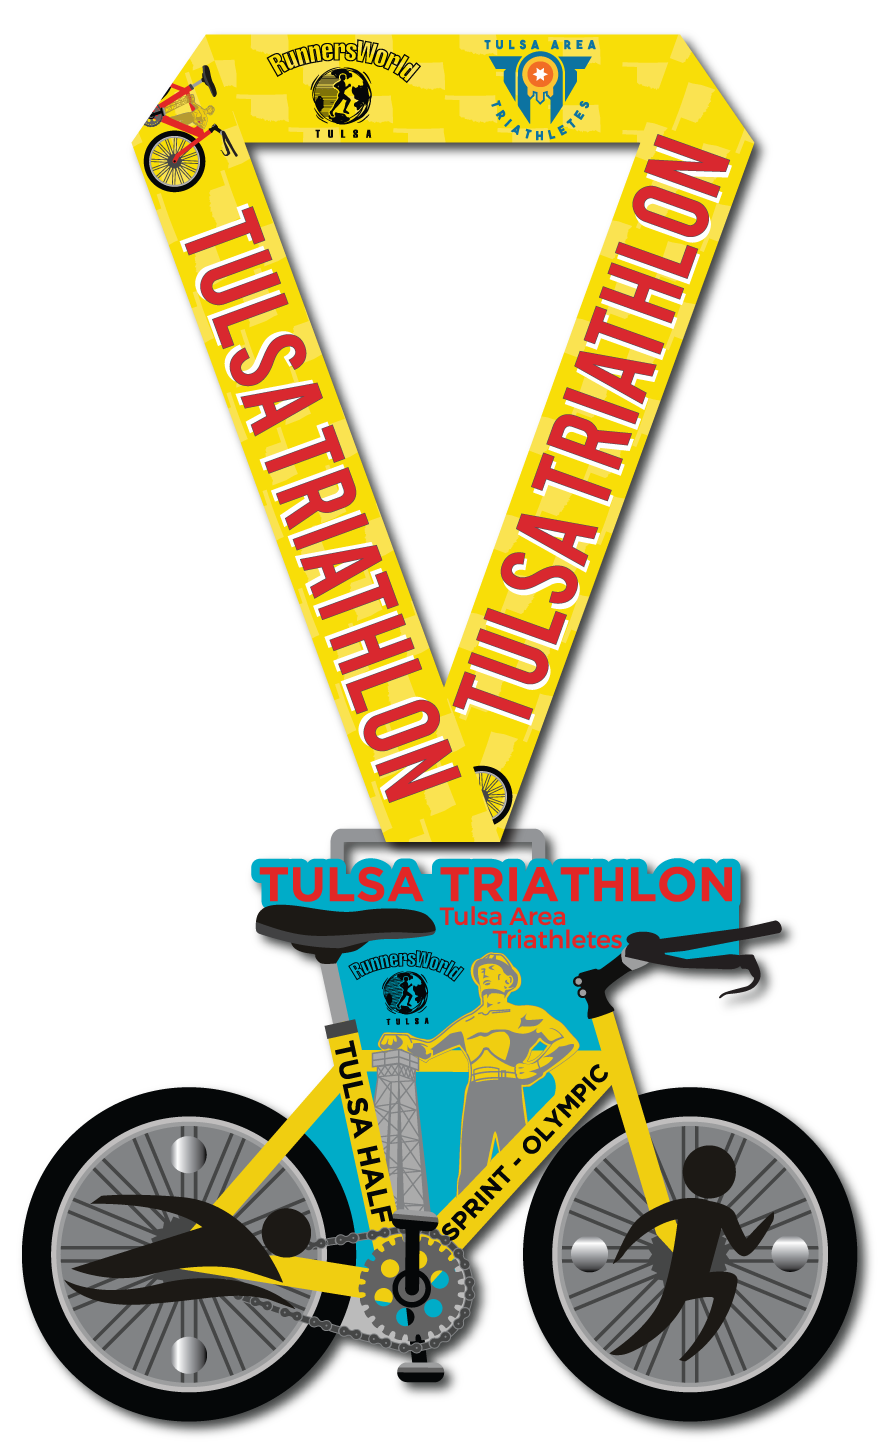 Finisher's Medal for the Tulsa Triathlon